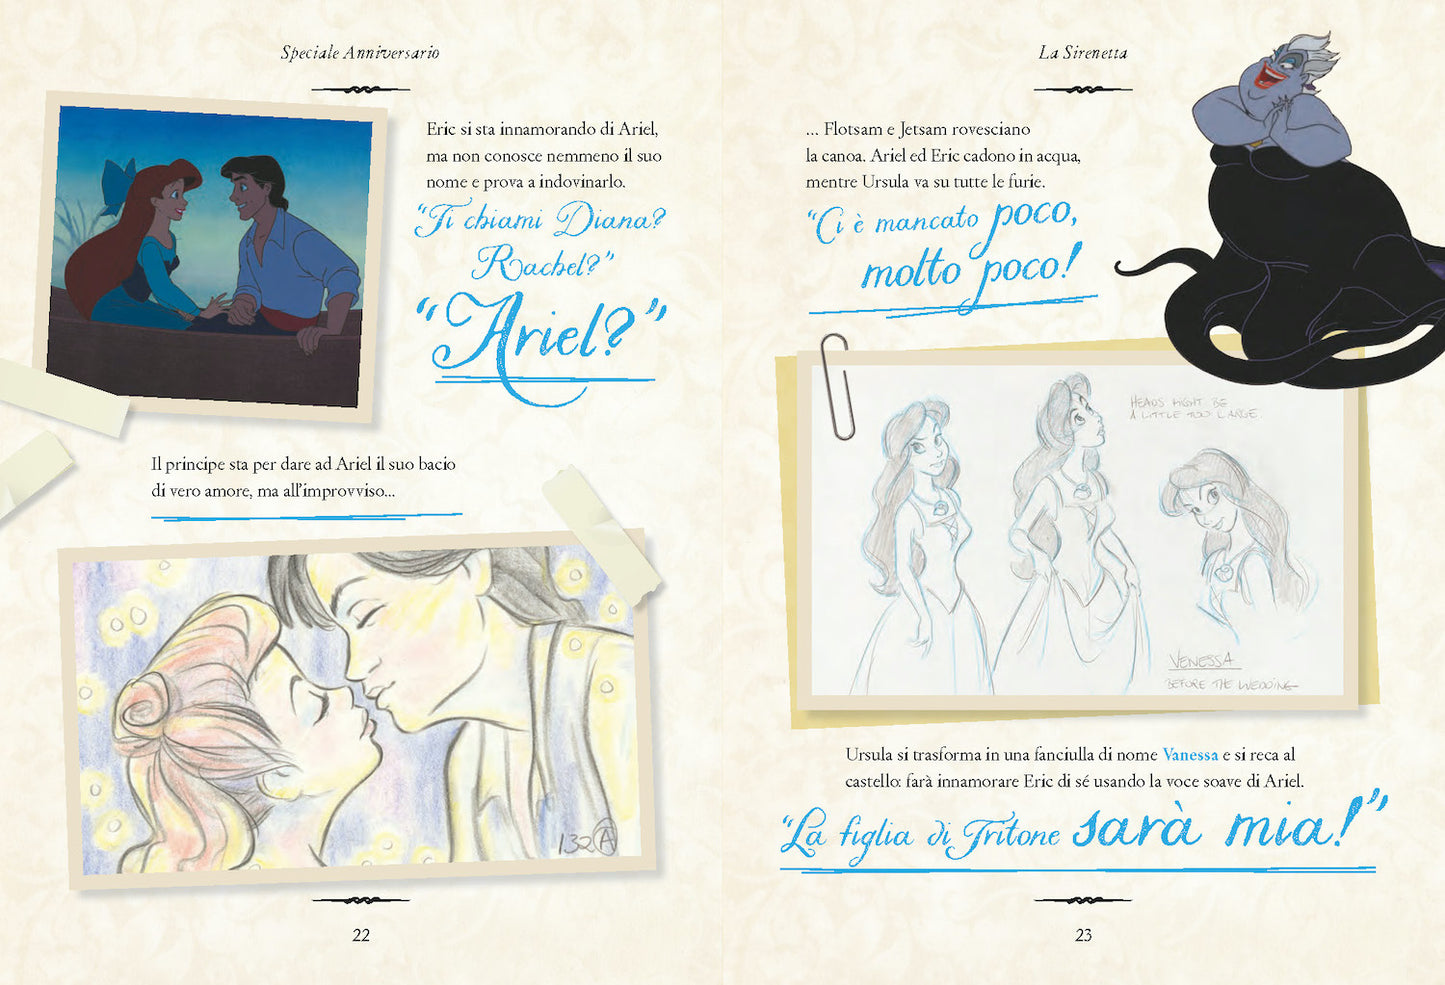 La Sirenetta Speciale Anniversario Edizione limitata::Disney 100 Anni di meravigliose emozioni